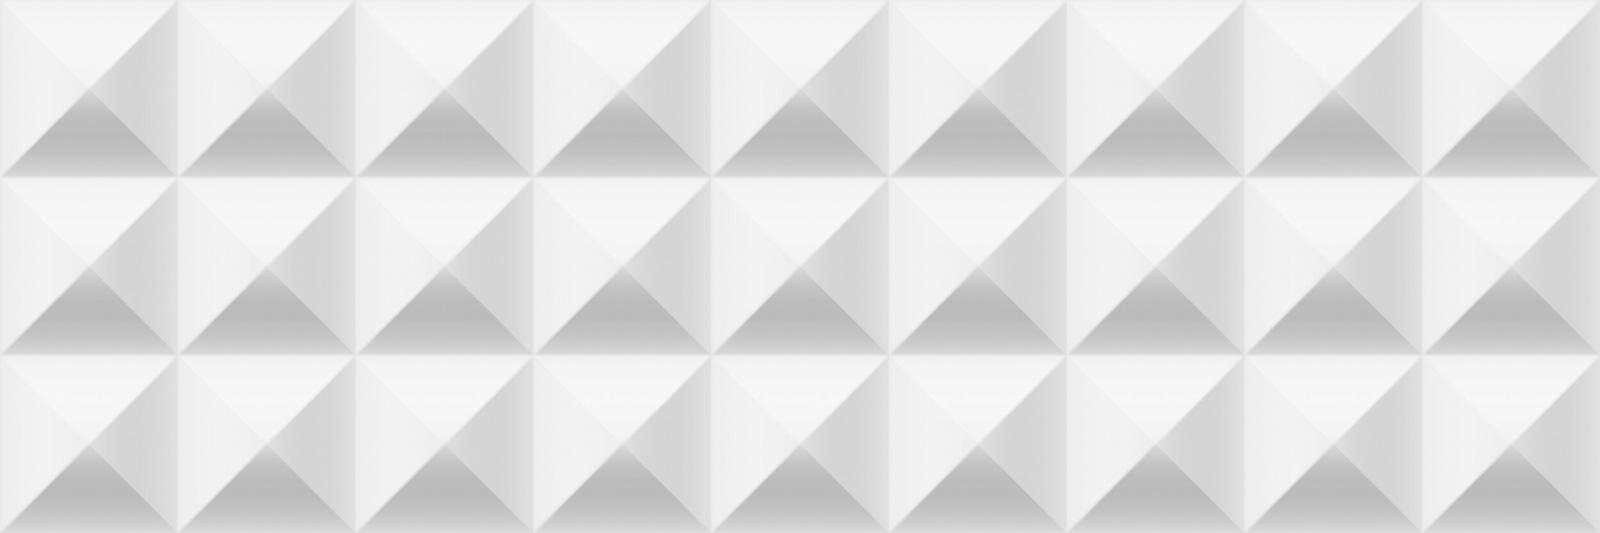 Prism White 3D Wall Tile 9.85 x 29.55